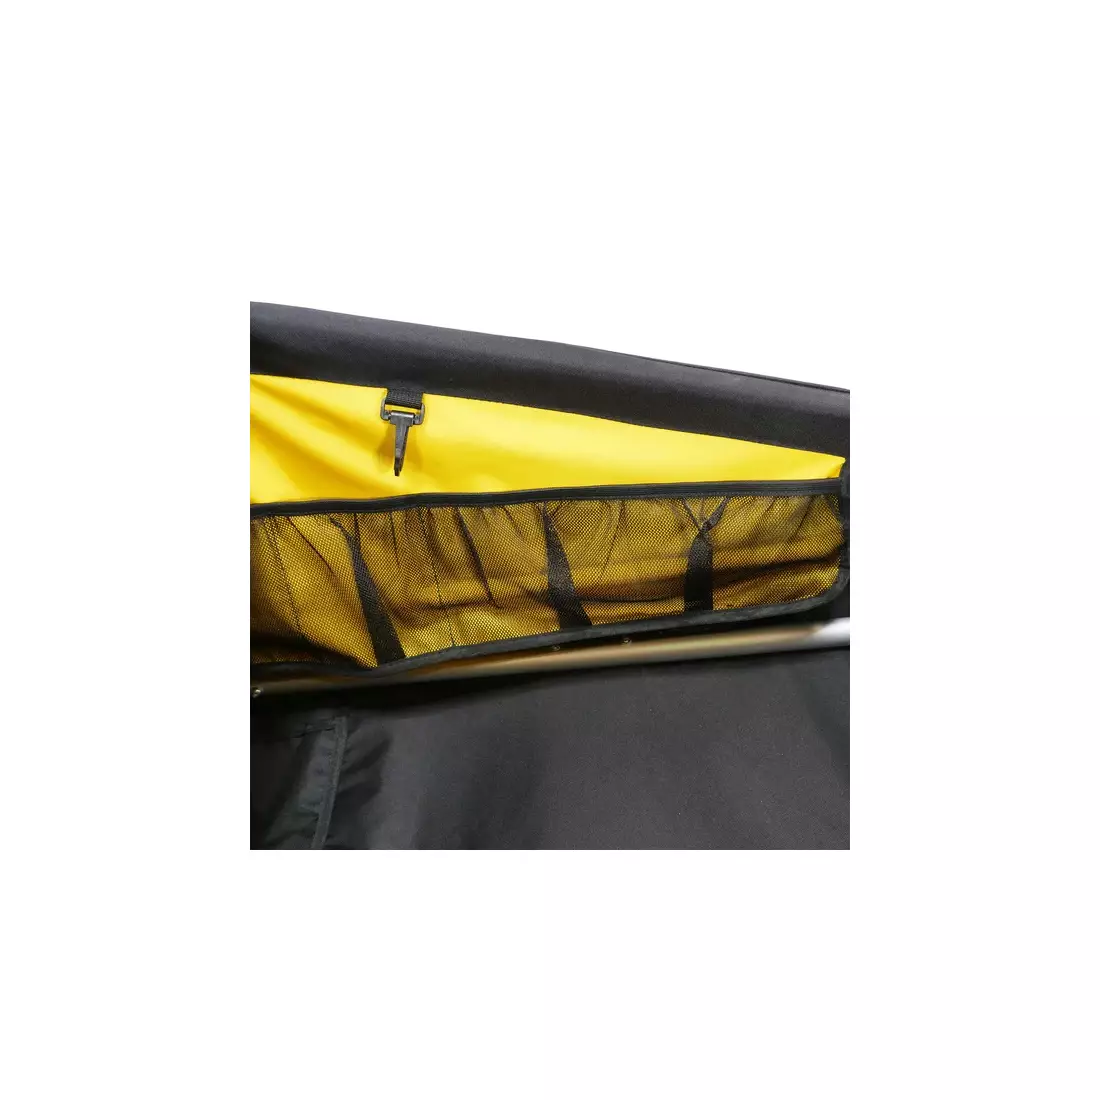 BURLEY NOMAD przyczepka bagażowa 105 L, czarno-żółta